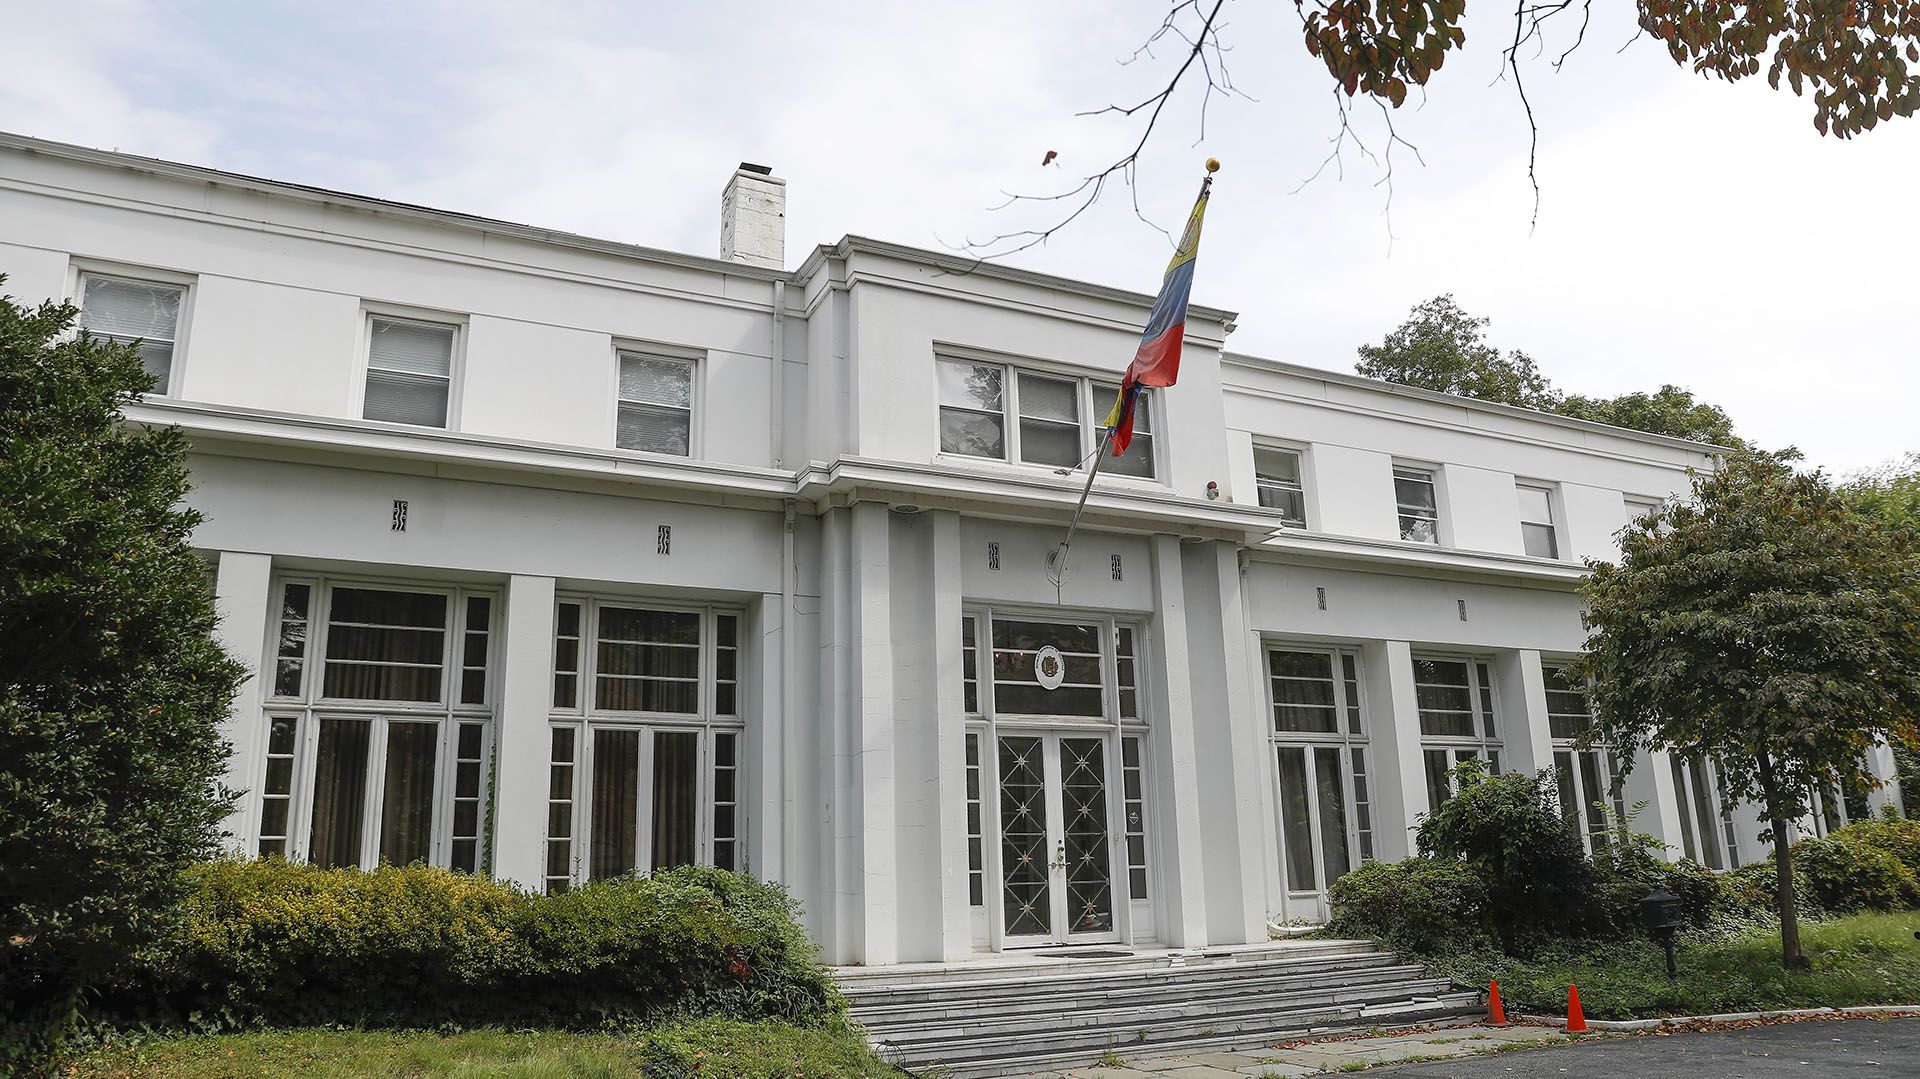 La entrada principal a la residencia del embajador de Venezuela en Washington (AP Photo/Pablo Martinez Monsivais)